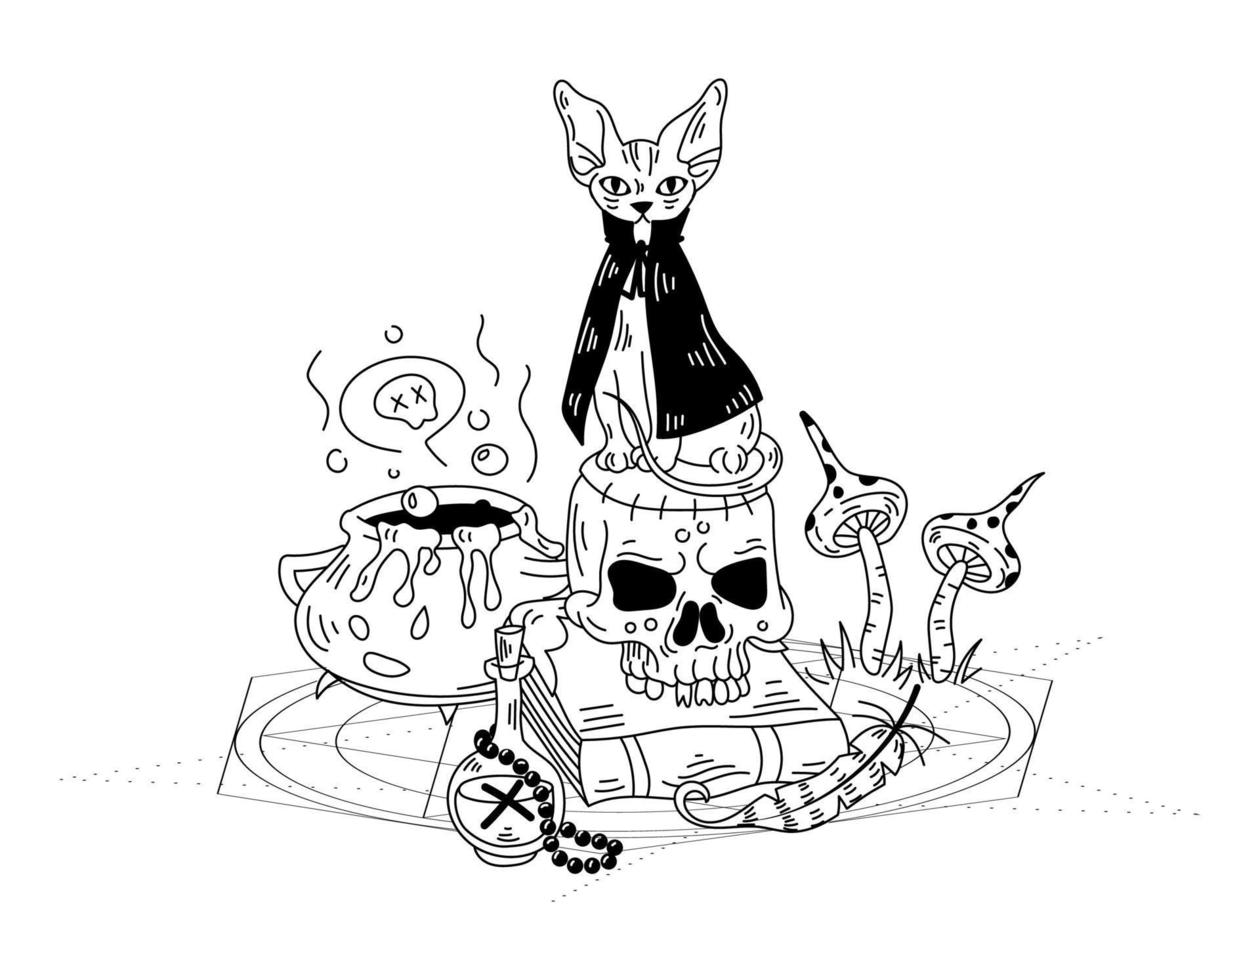 composición mística con un gato brujo y una calavera. vector dibujado a mano ilustración de doodle